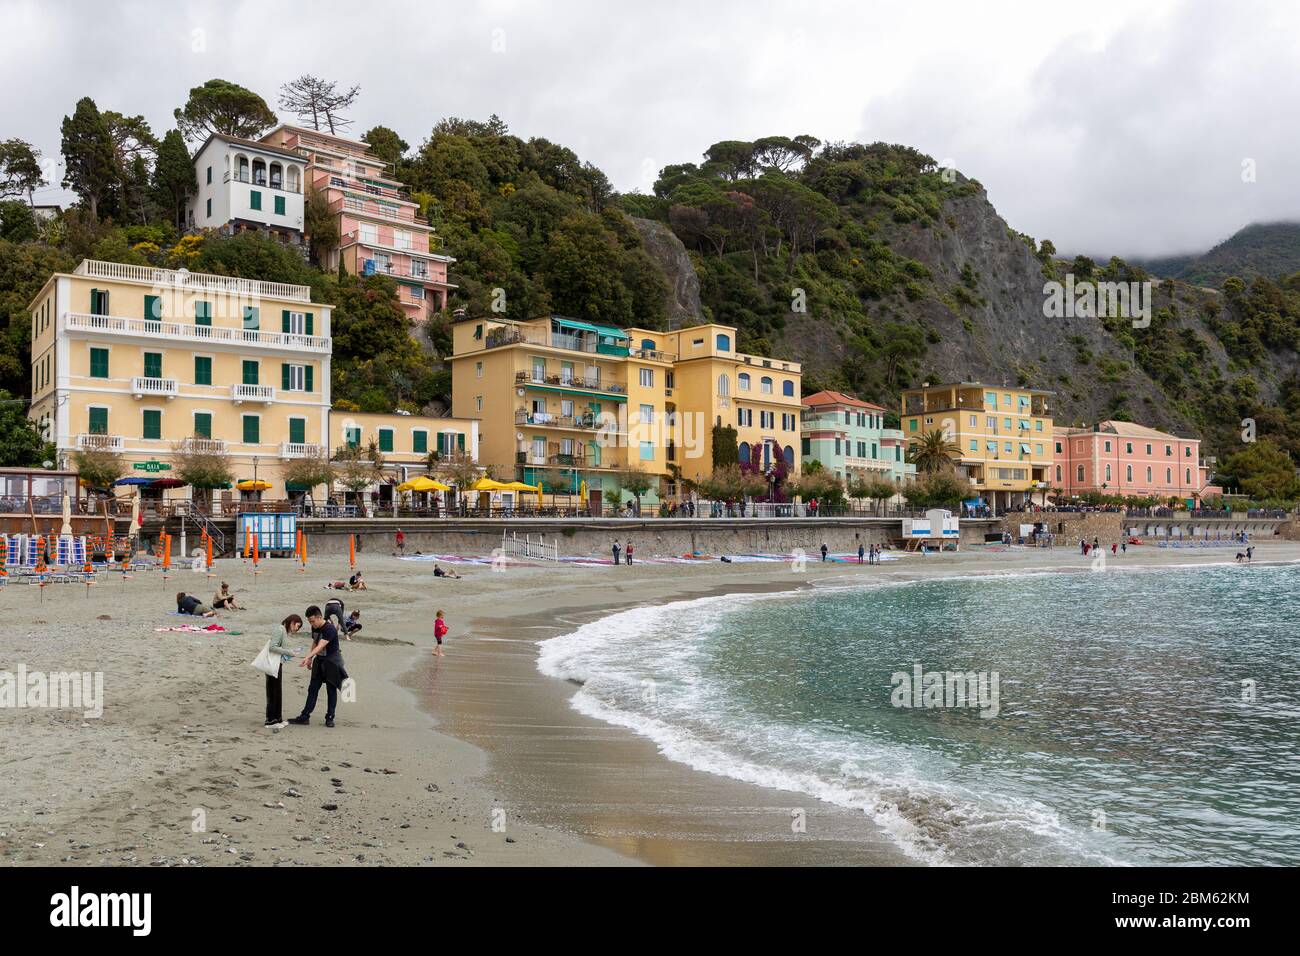 Monterosso al Mare ist der einzige Ort der Cinque Terre, der über einen Badestrand verfügt. Cinque Terre, la Spezia, Ligurien, Italien Banque D'Images